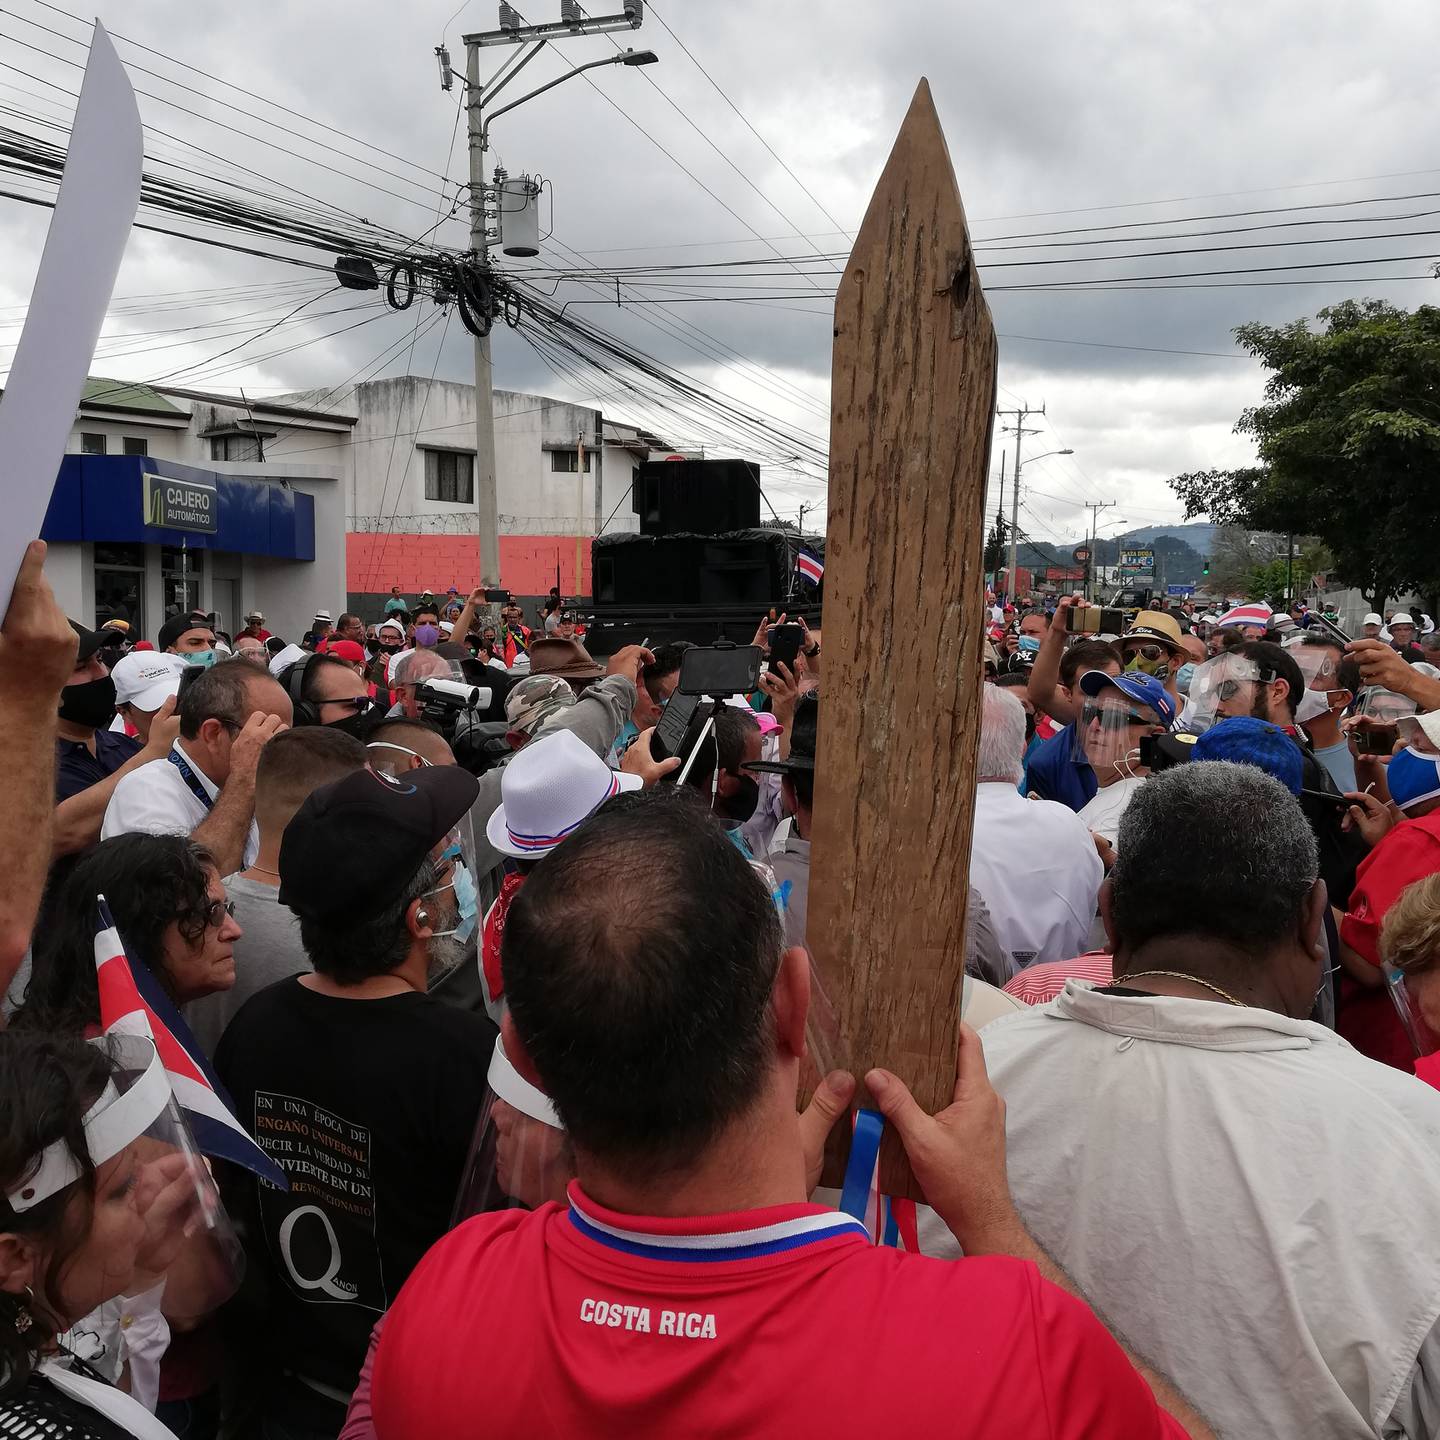 La marcha “pacífica” que convocó el Movimiento Rescate Nacional, liderado por los exdiputados Óscar Campos, José Miguel Corrales y Célimo Guido, terminó en un zafarrancho que incluso tuvo una explosión